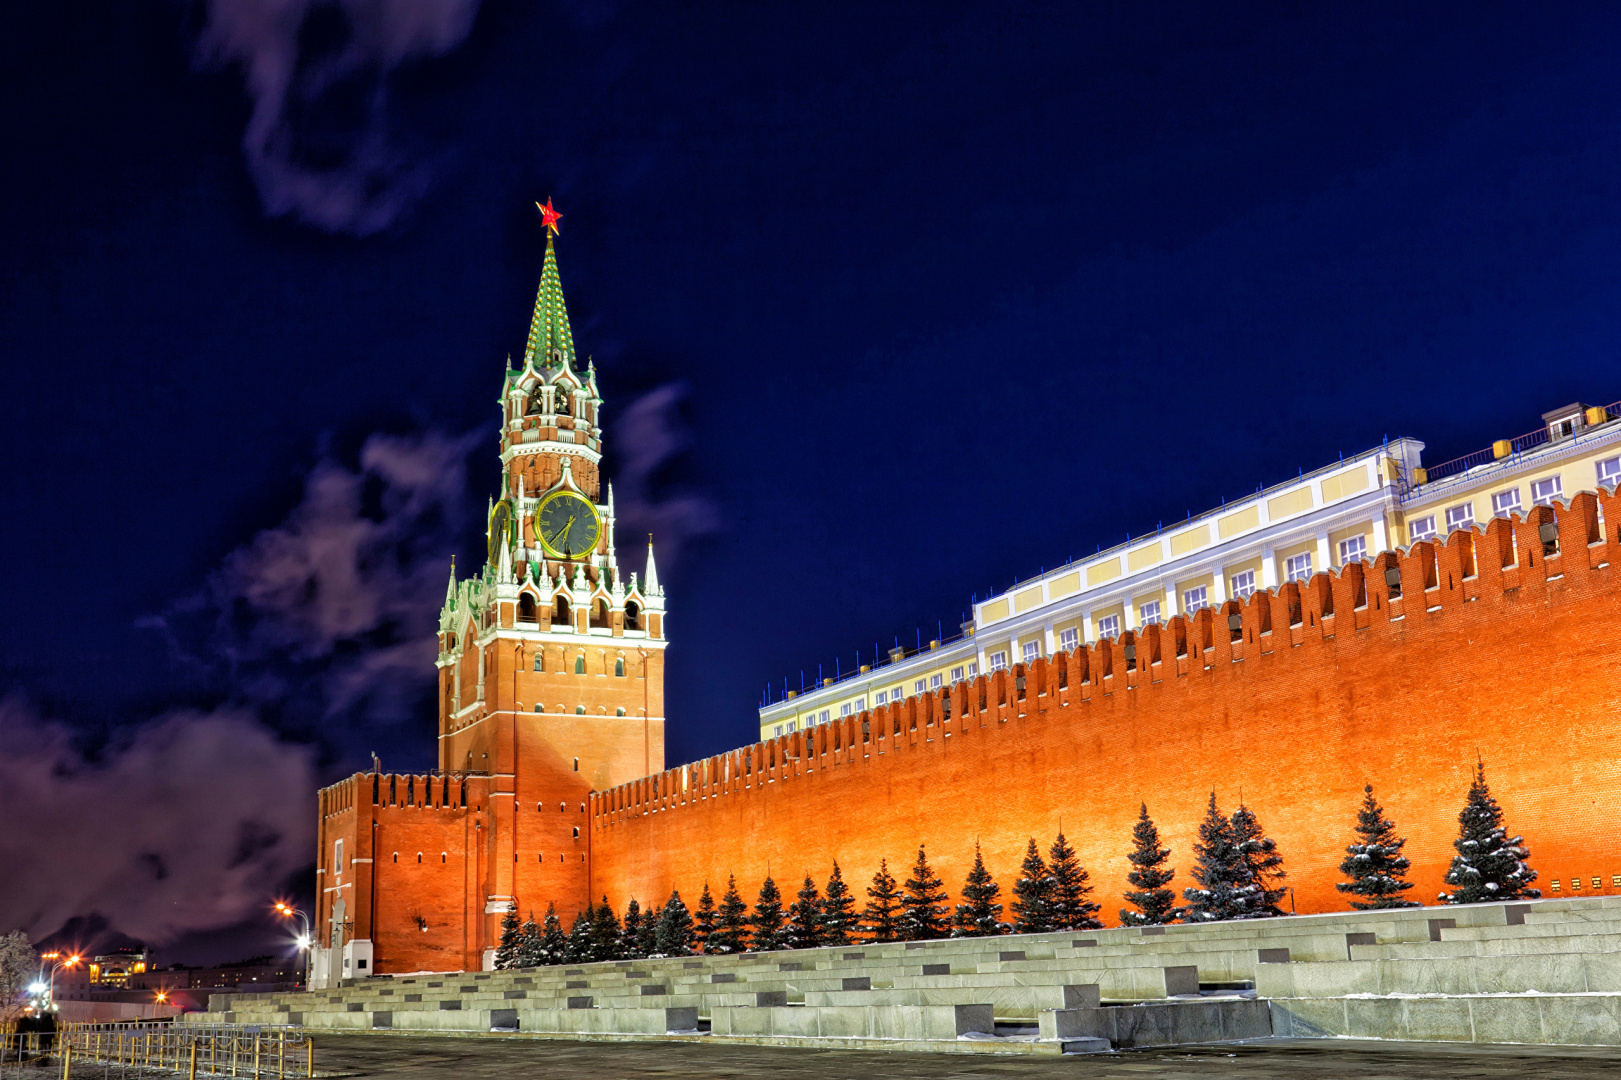 кремль в москве описание